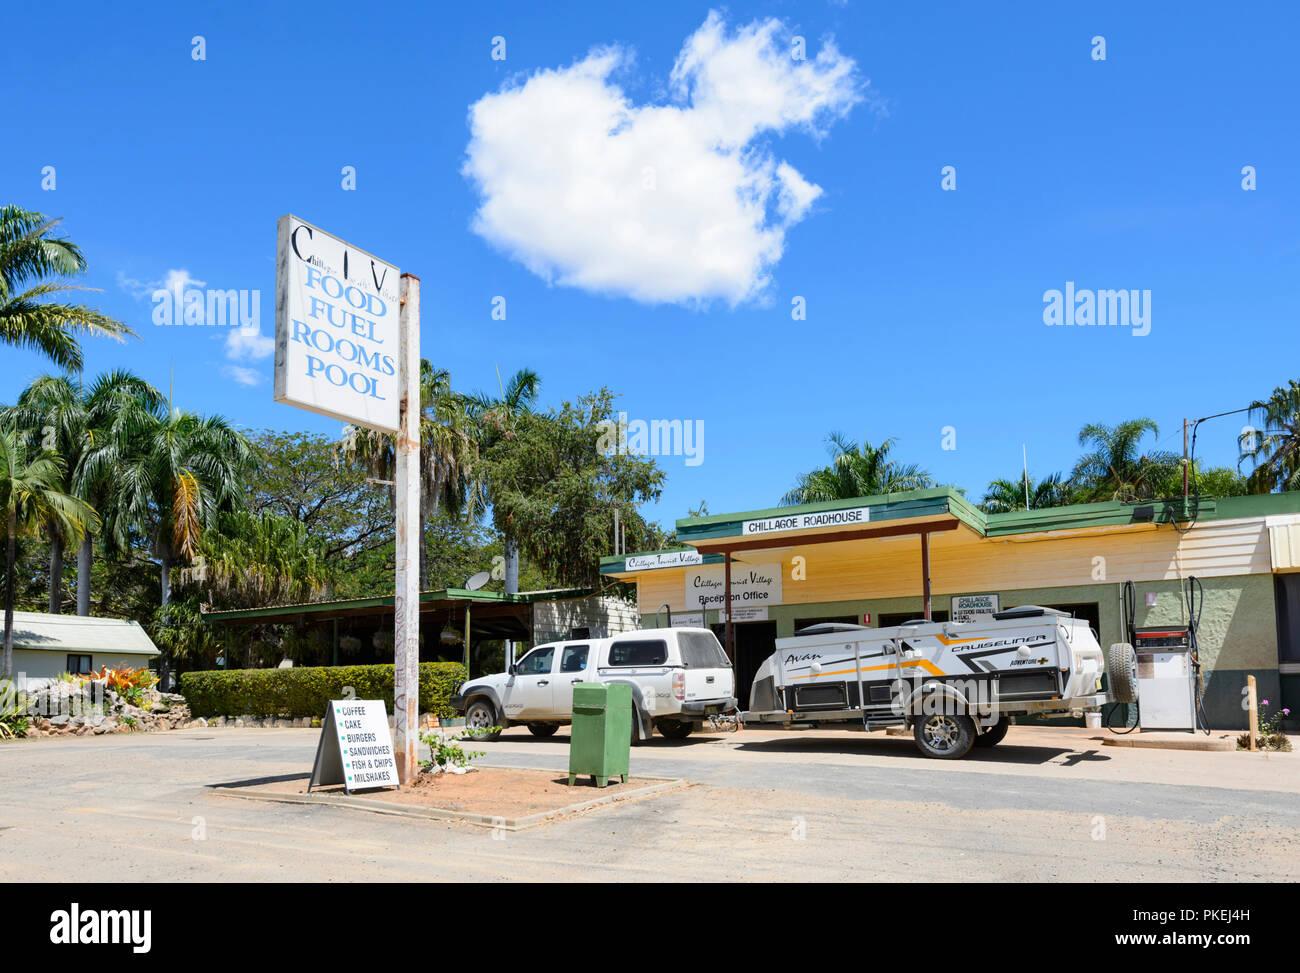 4X4 Auto abschleppen ein Avan cruiseliner Dekor off-road trailer Tanken bei chillagoe Roadhouse, chillagoe Tourist Village, Nord Queensland, Queensland, Australien Stockfoto